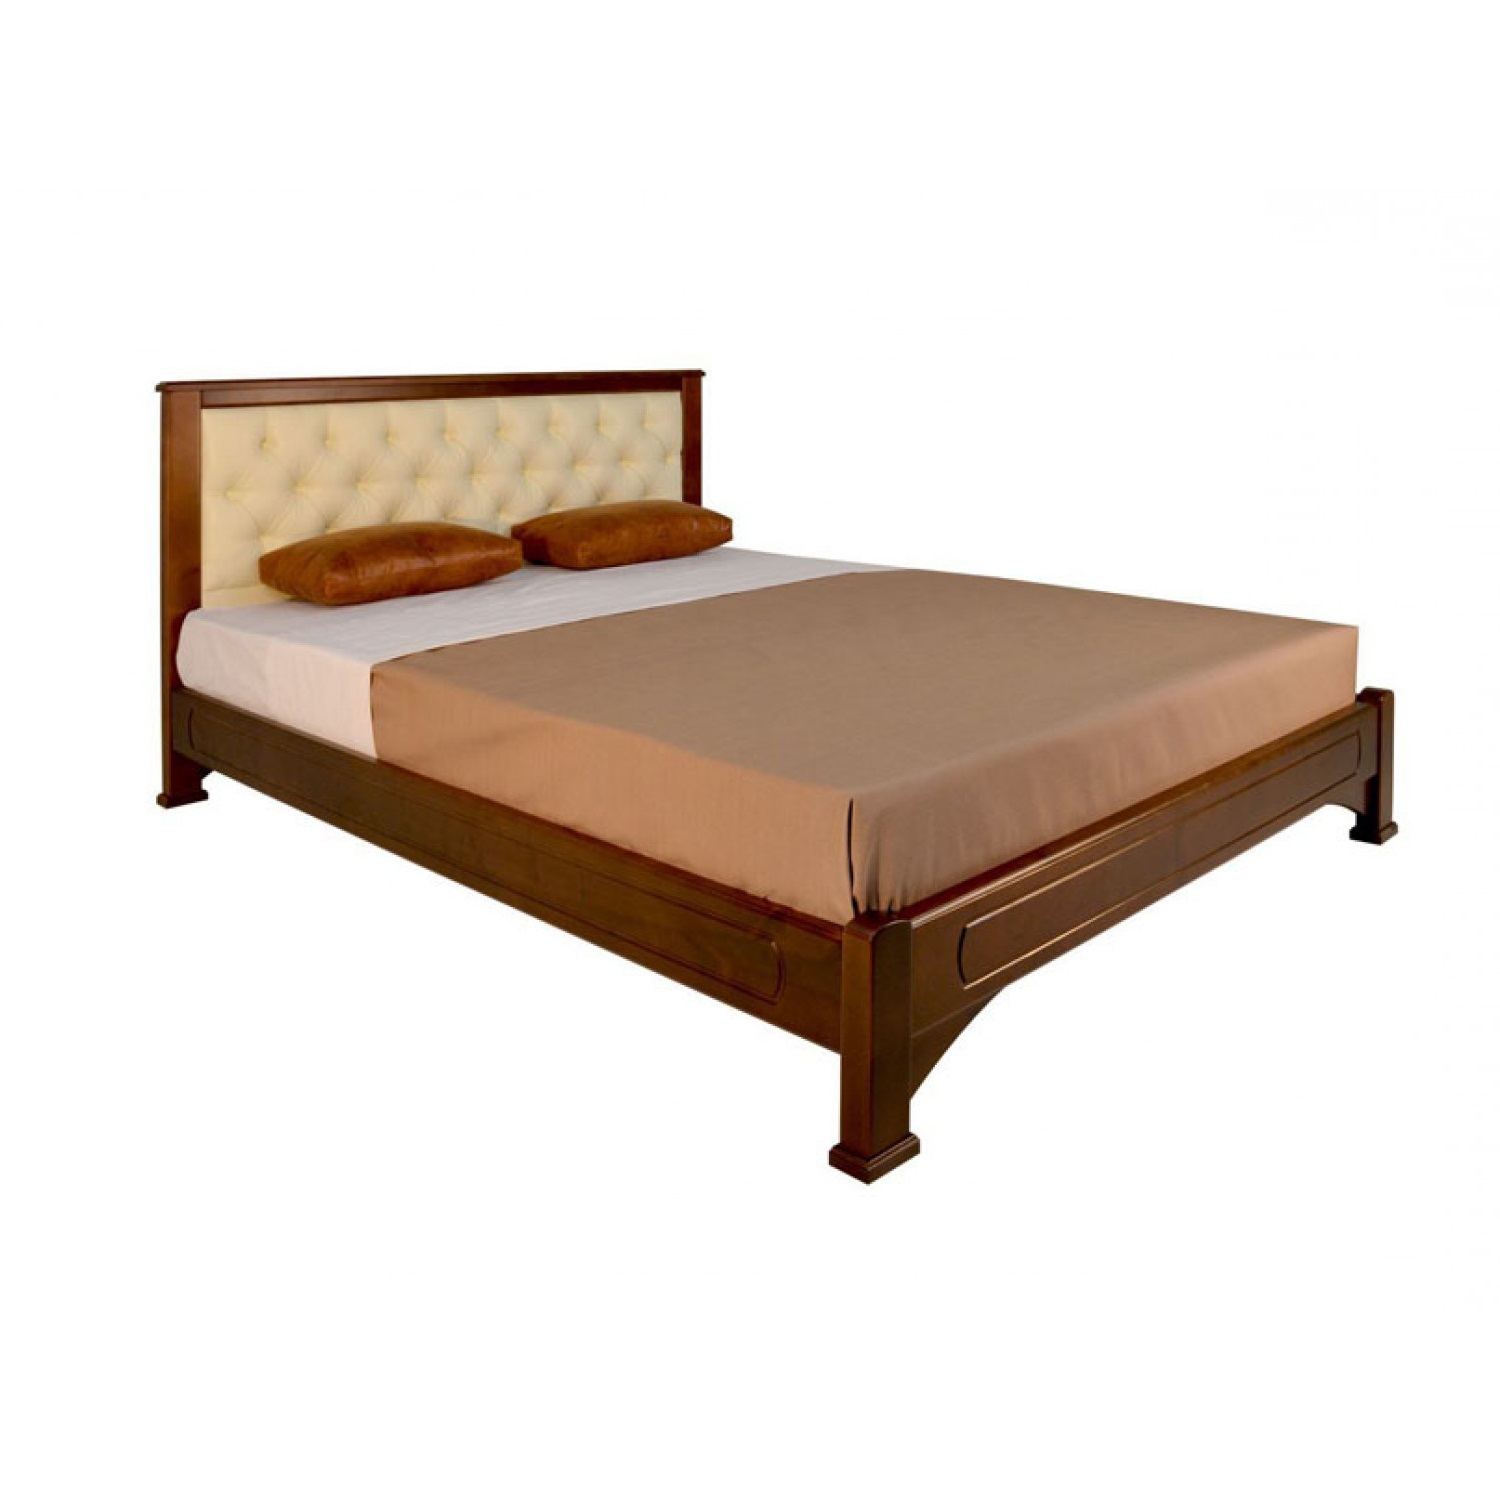 Купить деревянную кровать недорого. Кровать массив дерева 140х200 лазурит. Кровать "Омега" прямая с мягкой вставкой. Кровать Омега Люкс Пума. Кровать Омега массив березы.